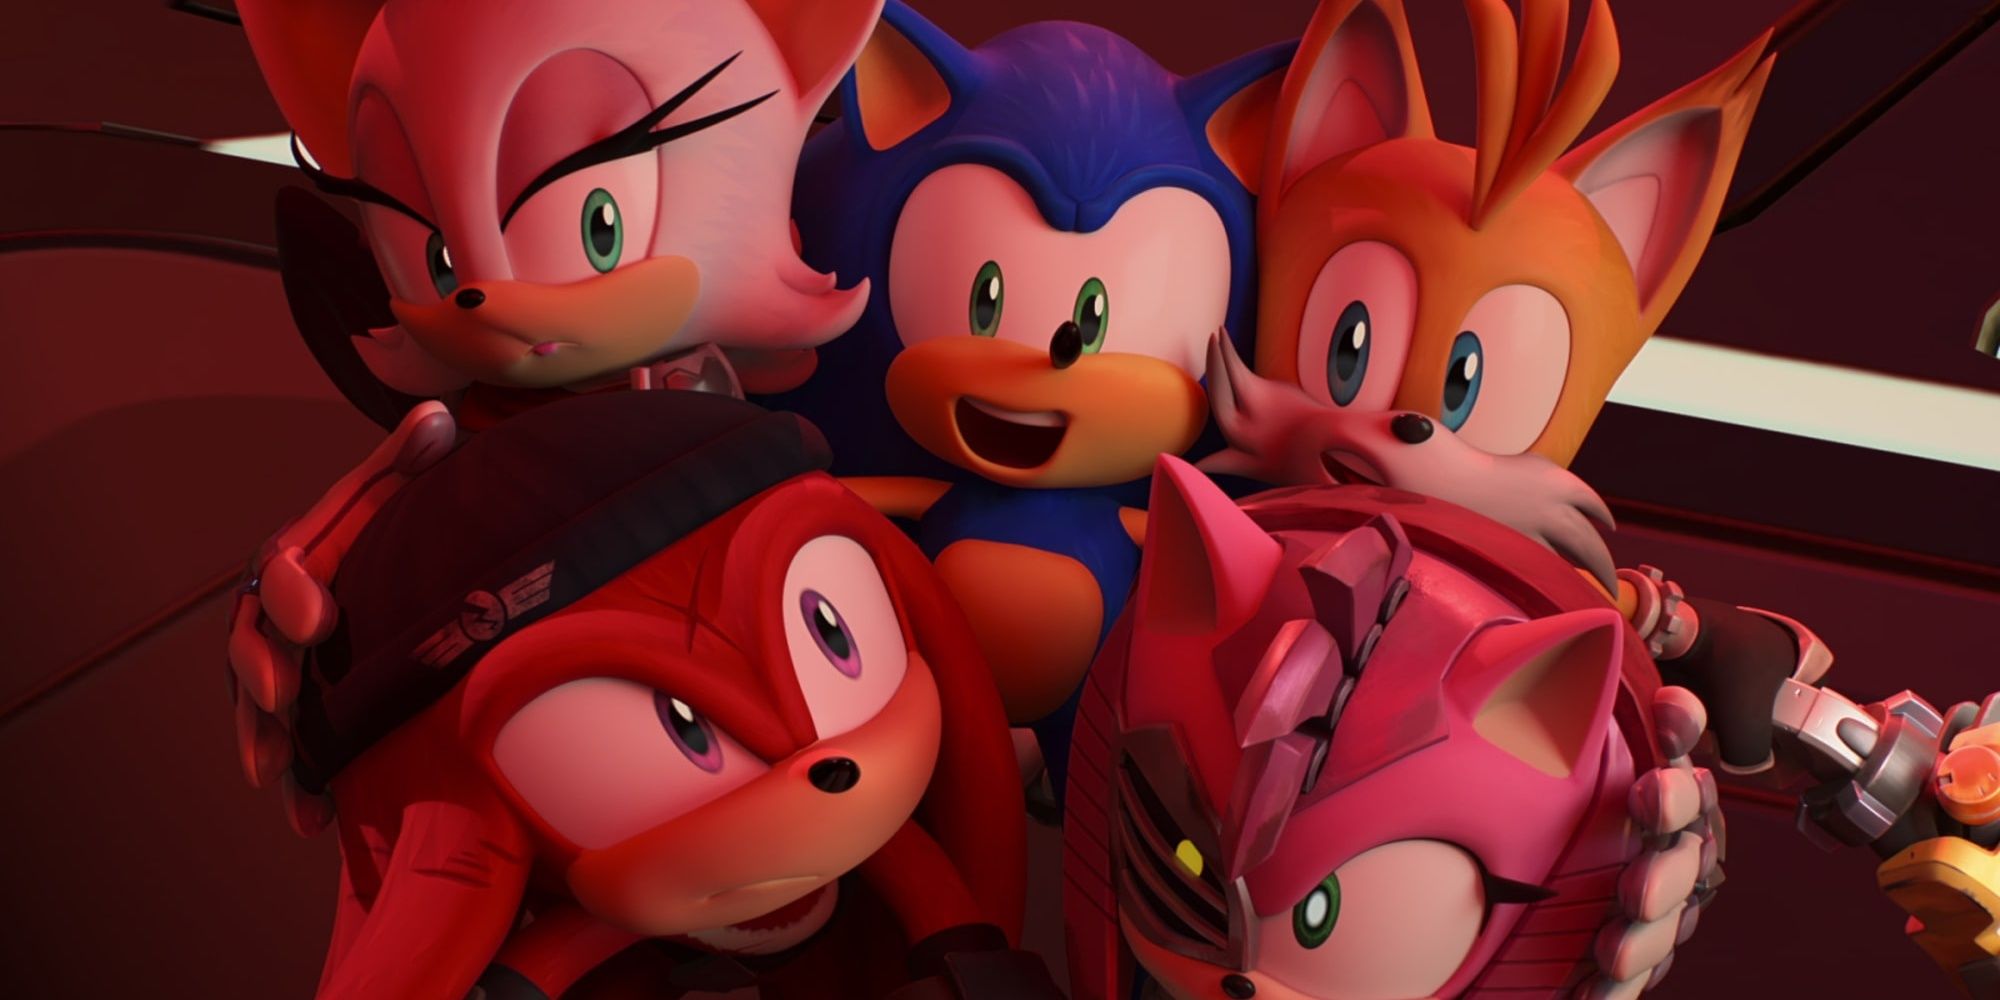 Sonic Prime Season 1's Ending, Explained